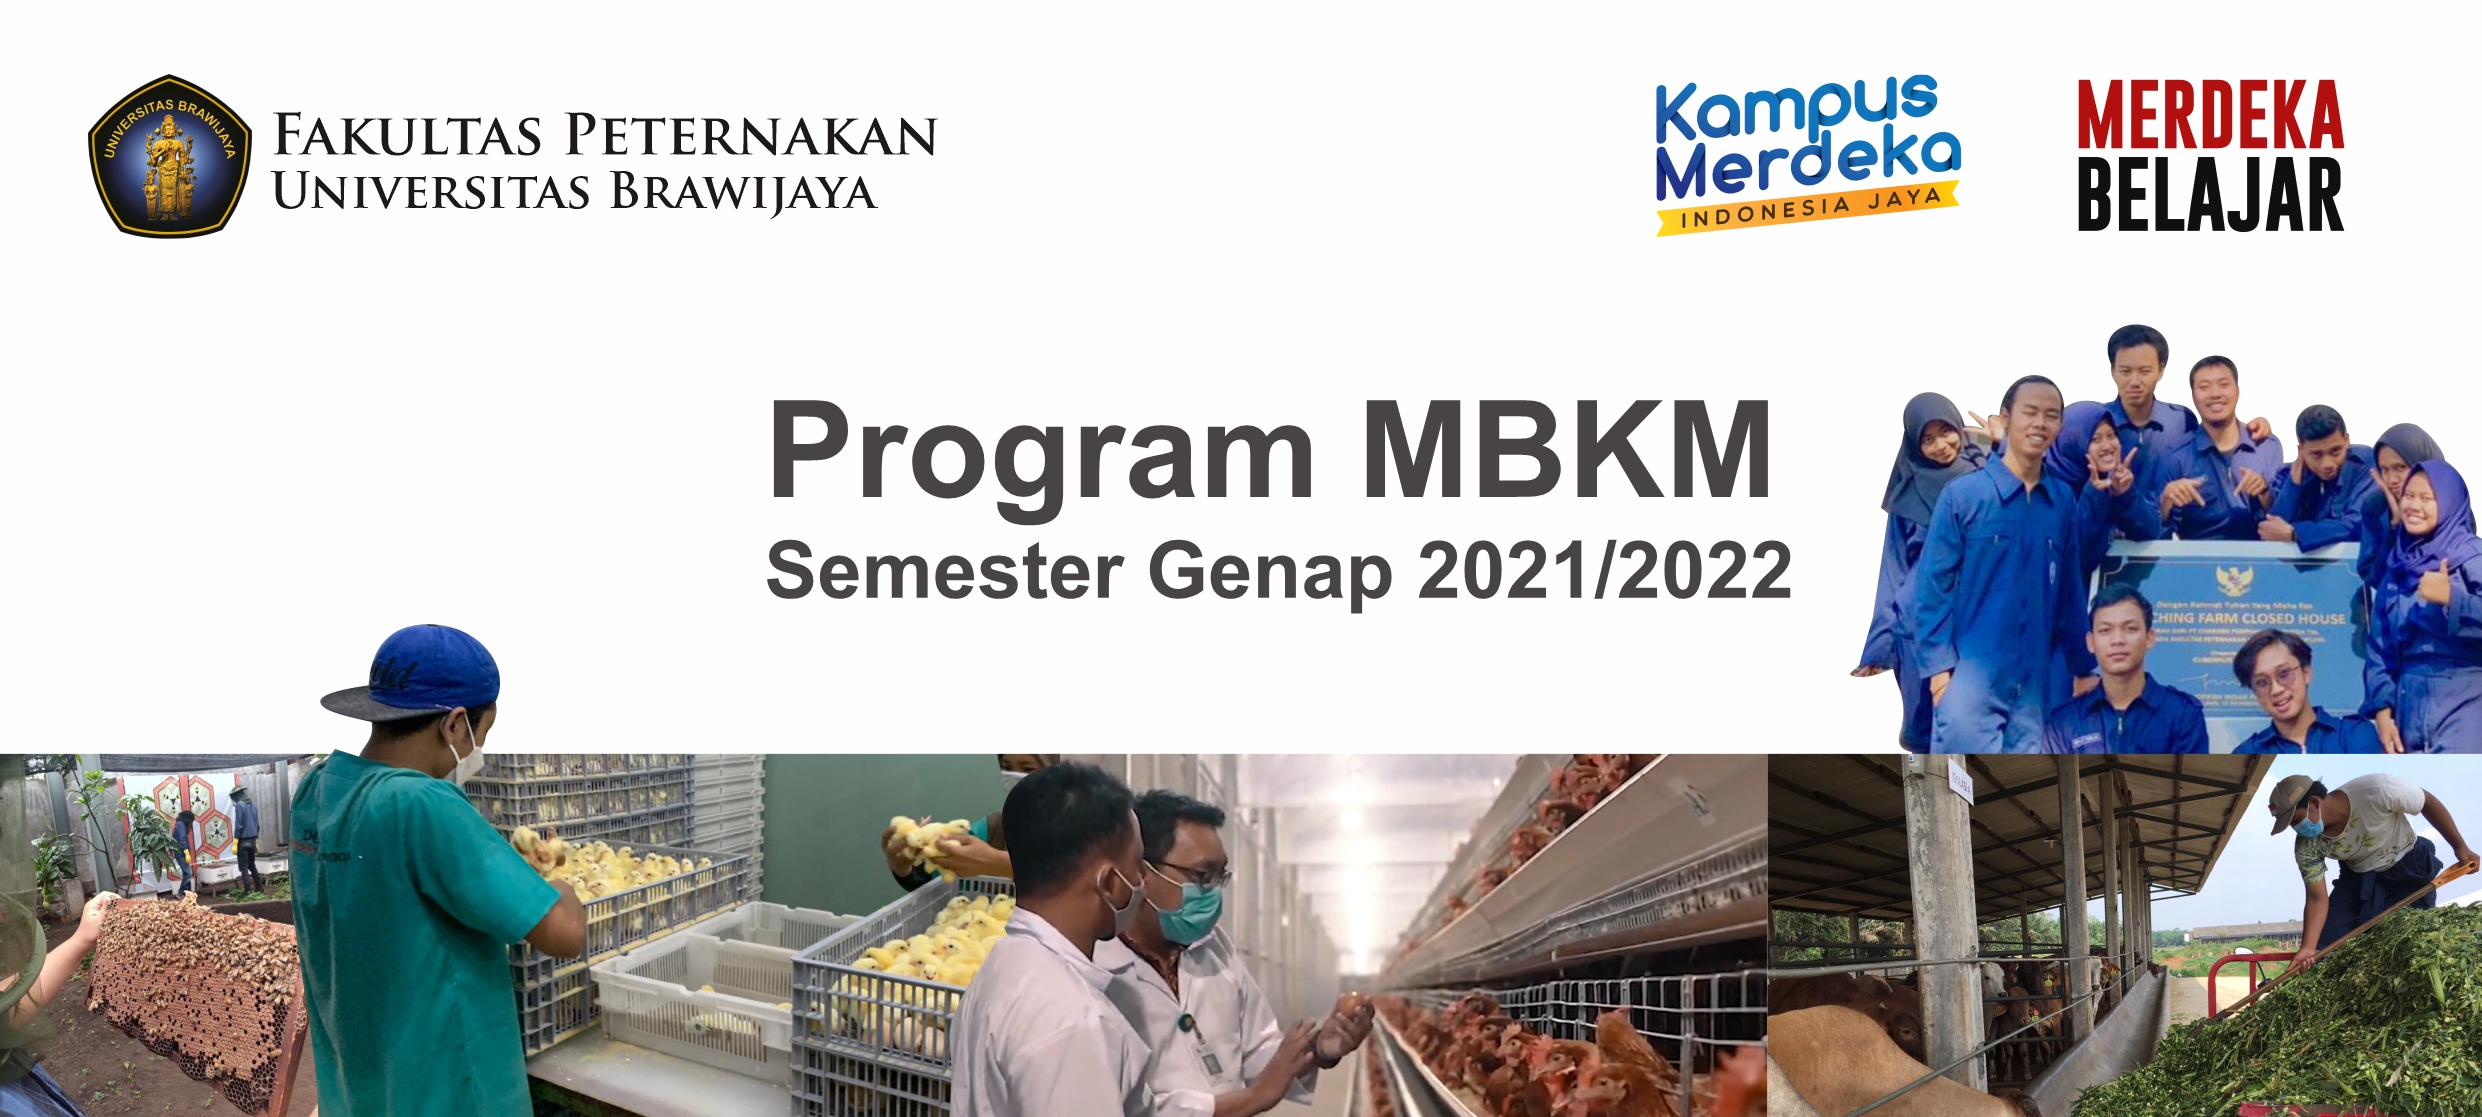 Program MBKM Semester Genap 2021/2022